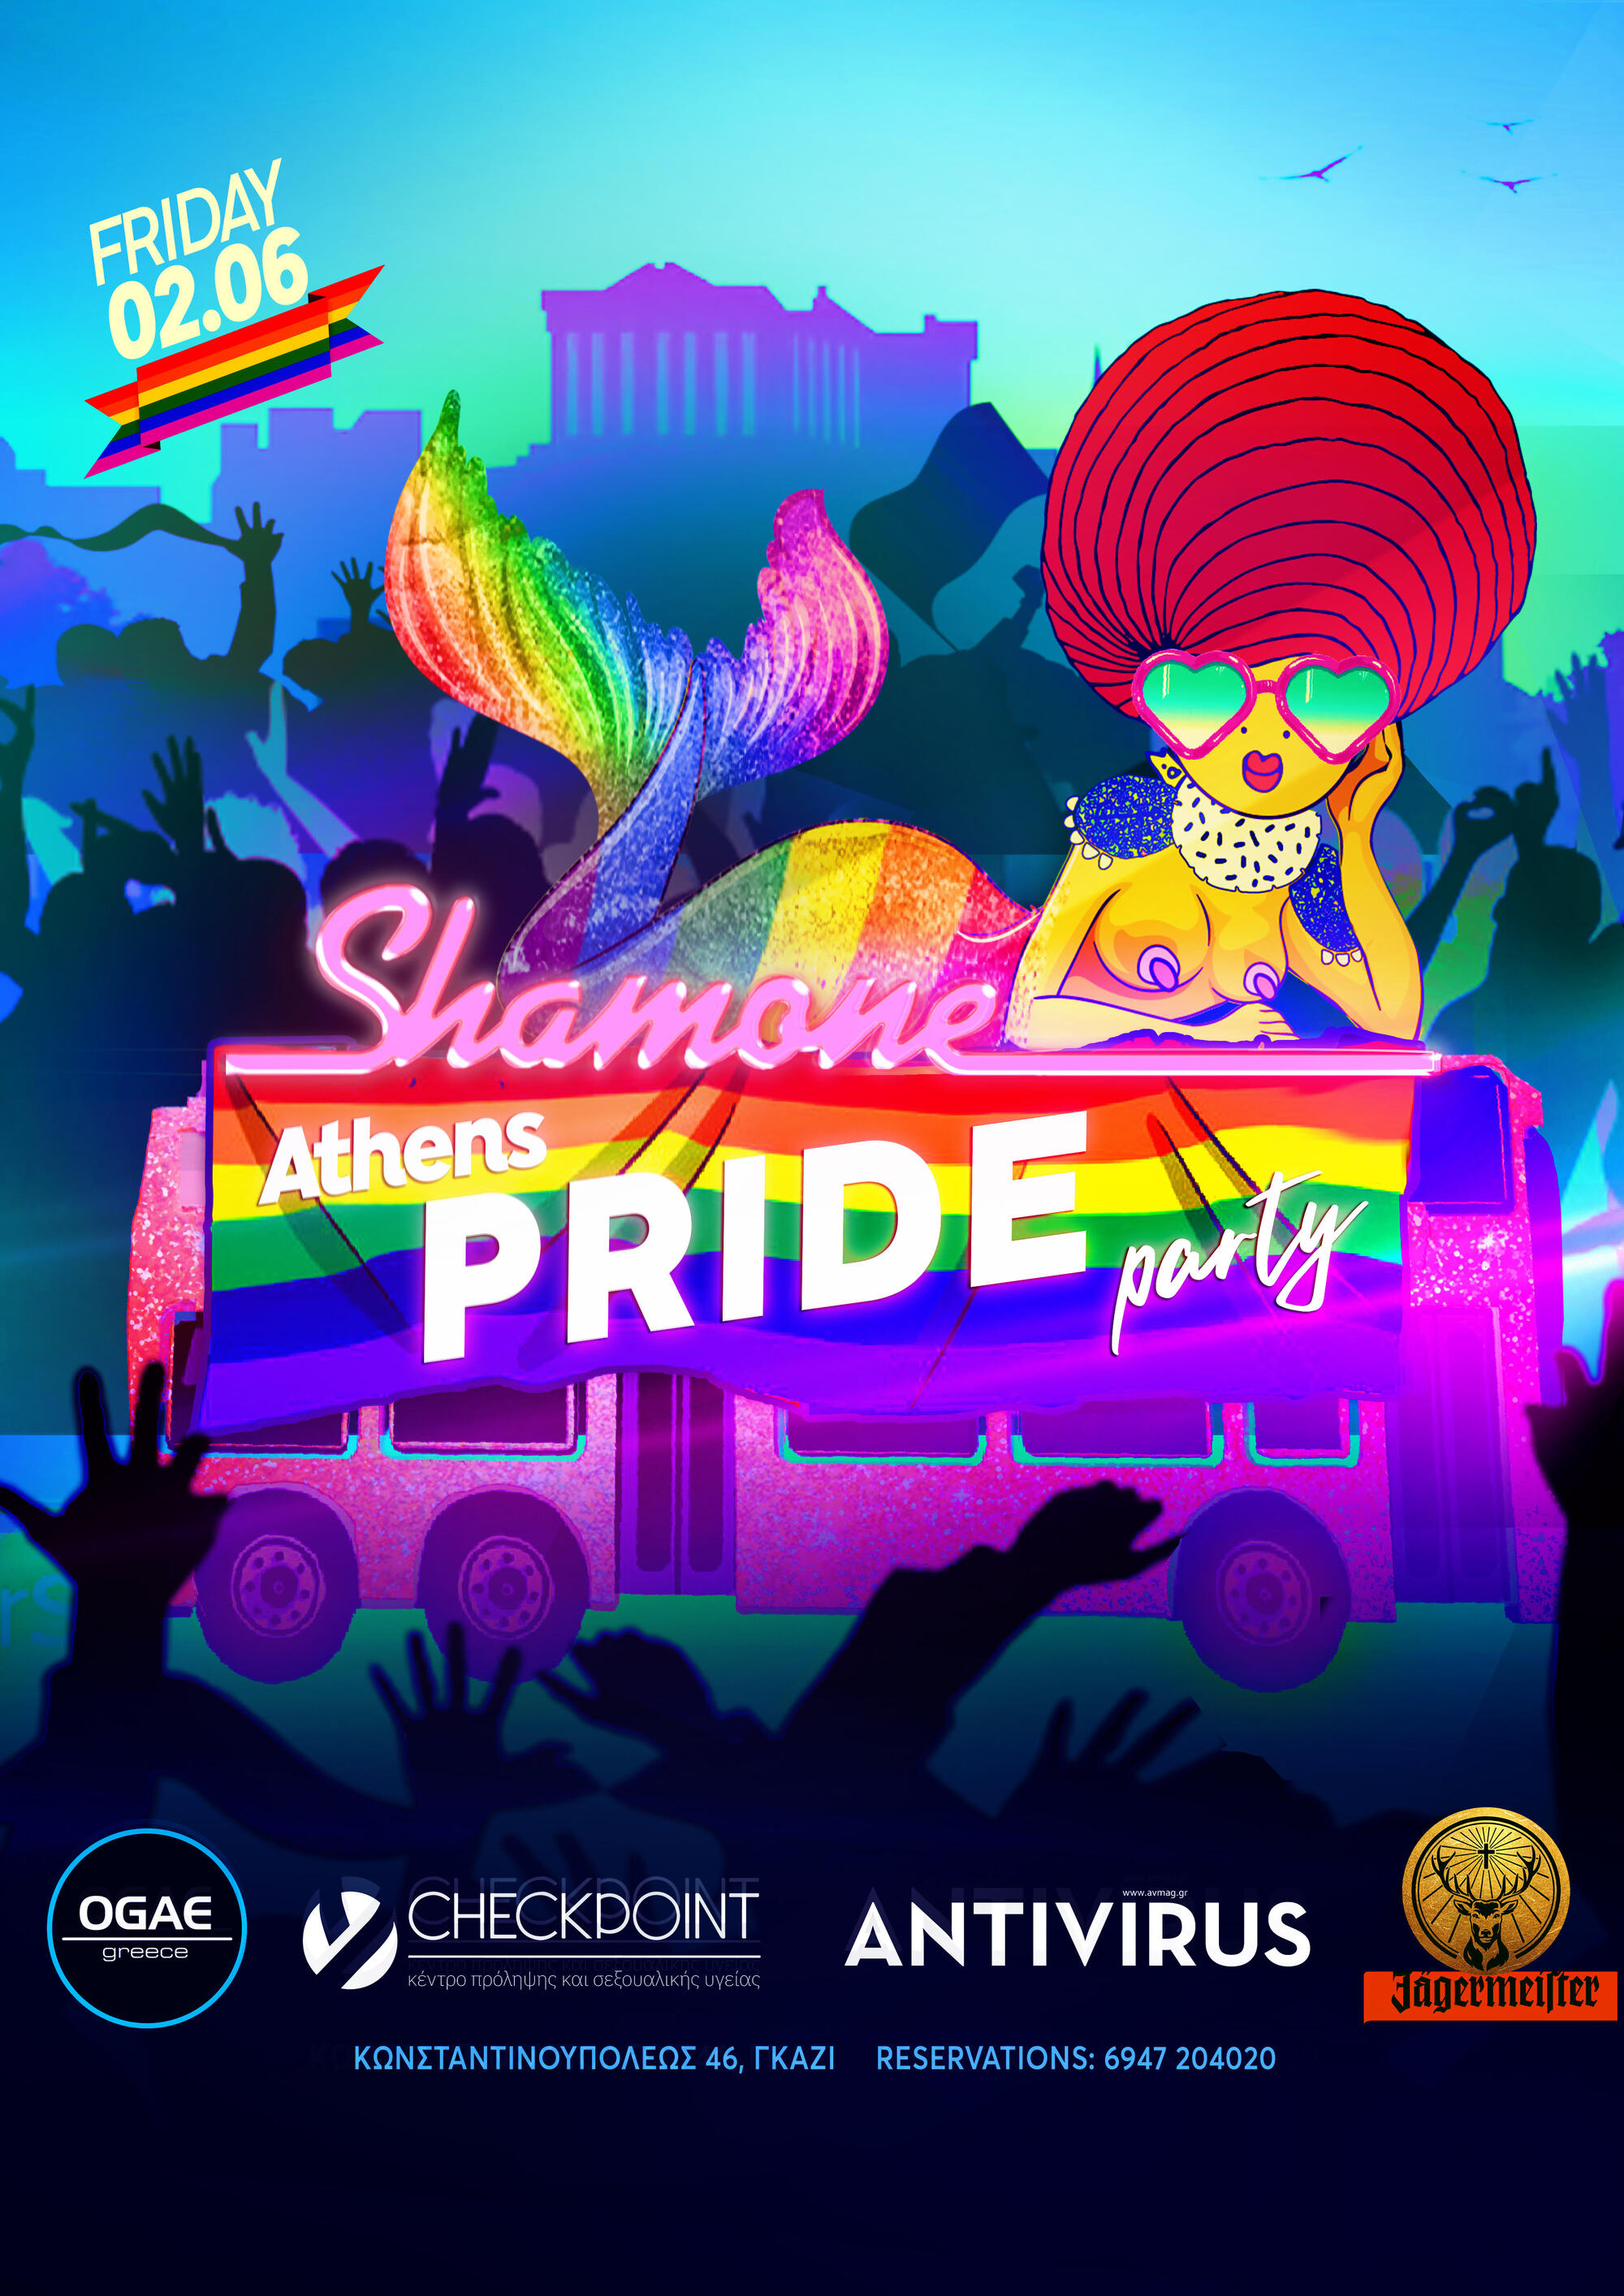 Την Παρασκευή το πάρτι του Shamone για το Athens Pride